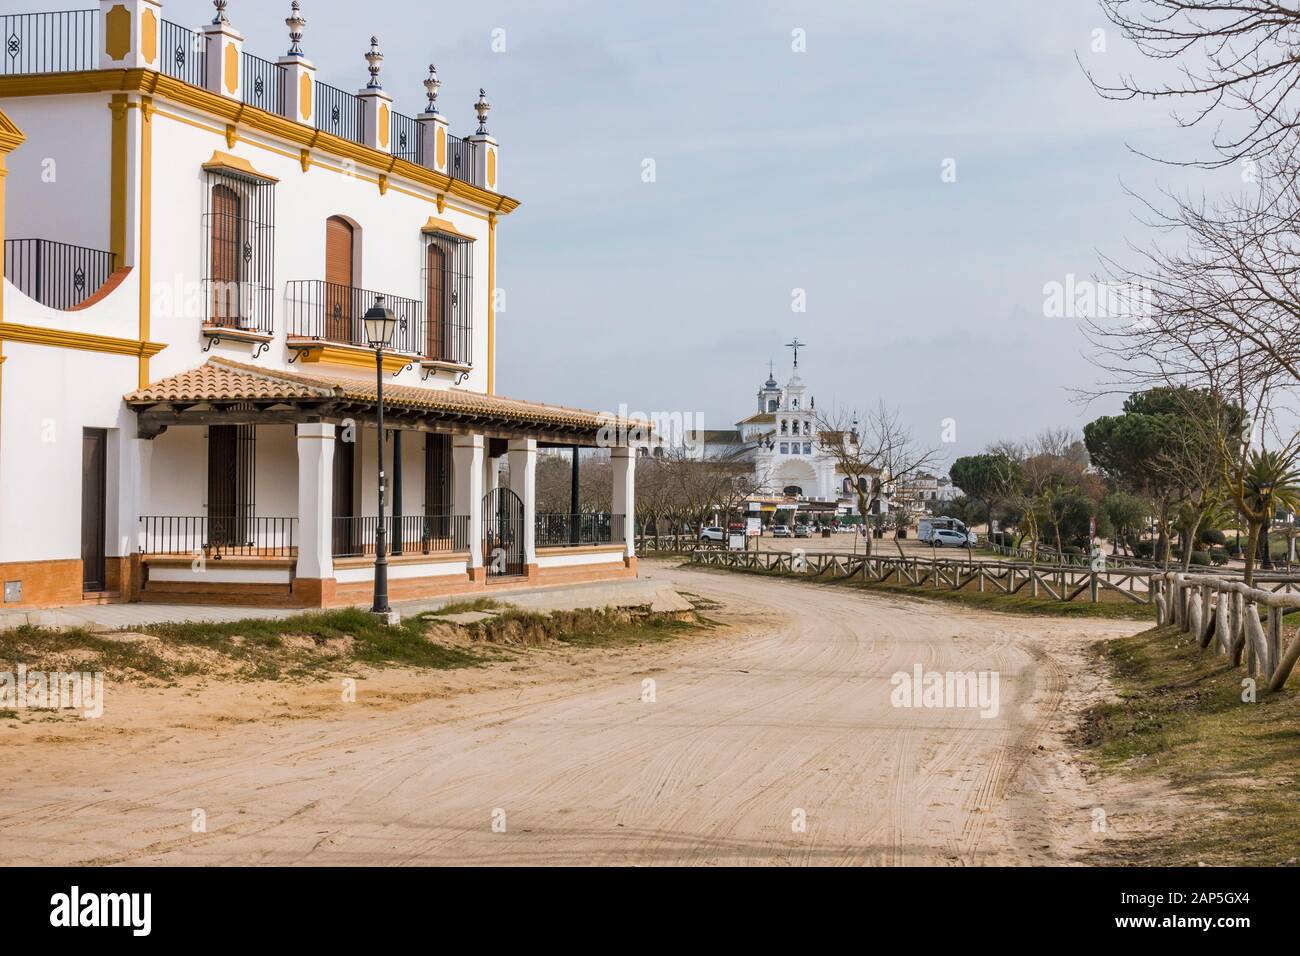 El Rocio Spagna. Strade sabbiose e confraternita nel villaggio in stile occidentale. El Rocio, Provincia Di Huelva, Andalusia, Spagna, Europa Foto Stock